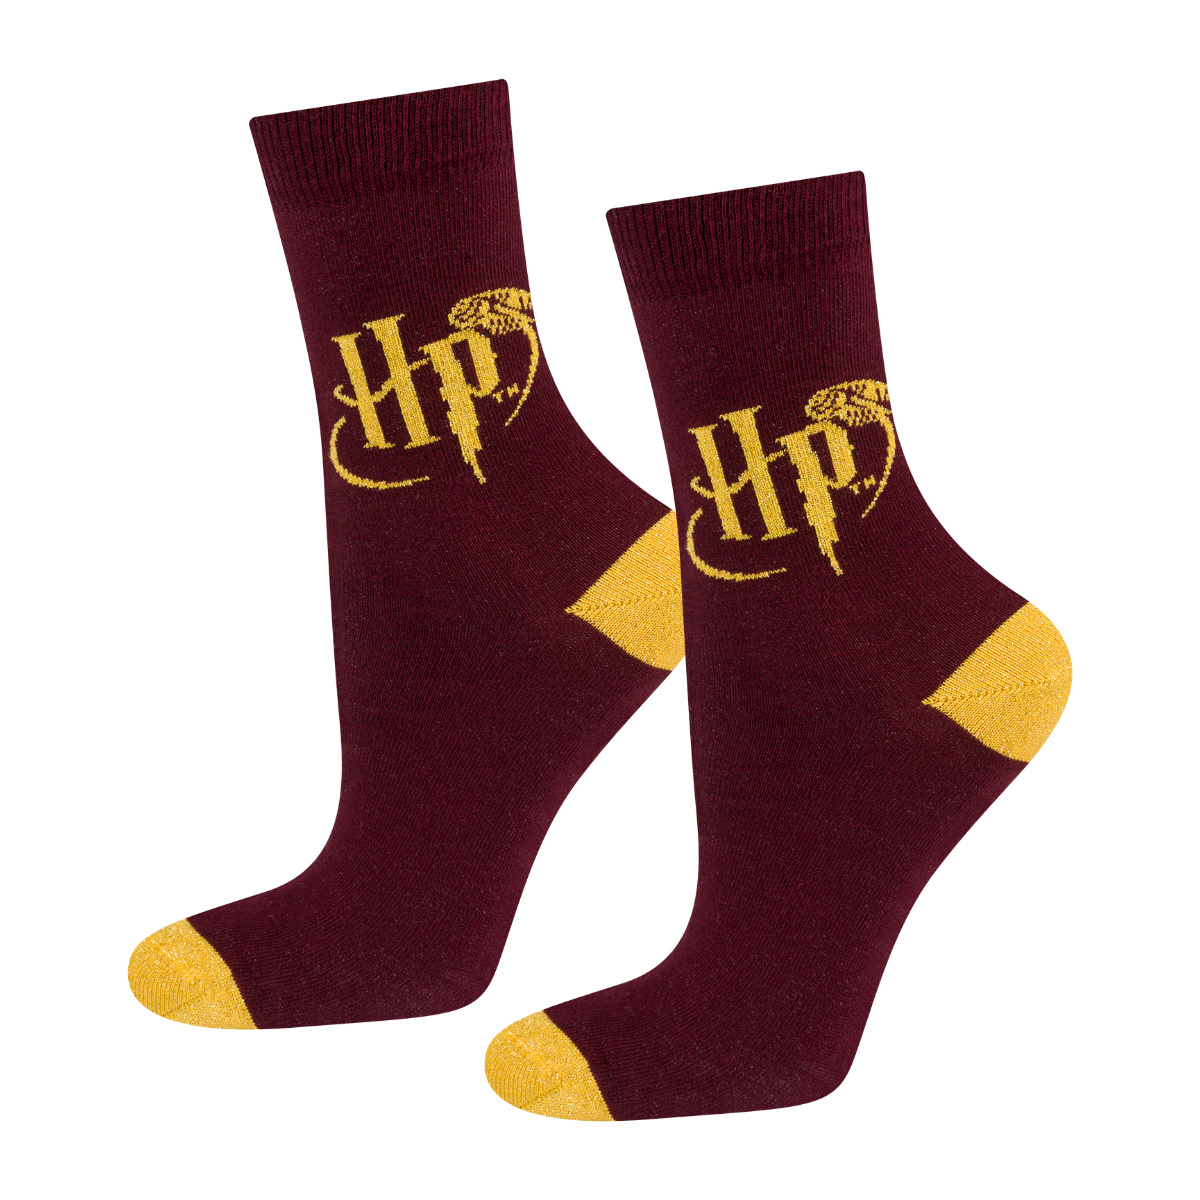 Harry Potter Womens Socks in Womens Socks, Hosiery & Tights